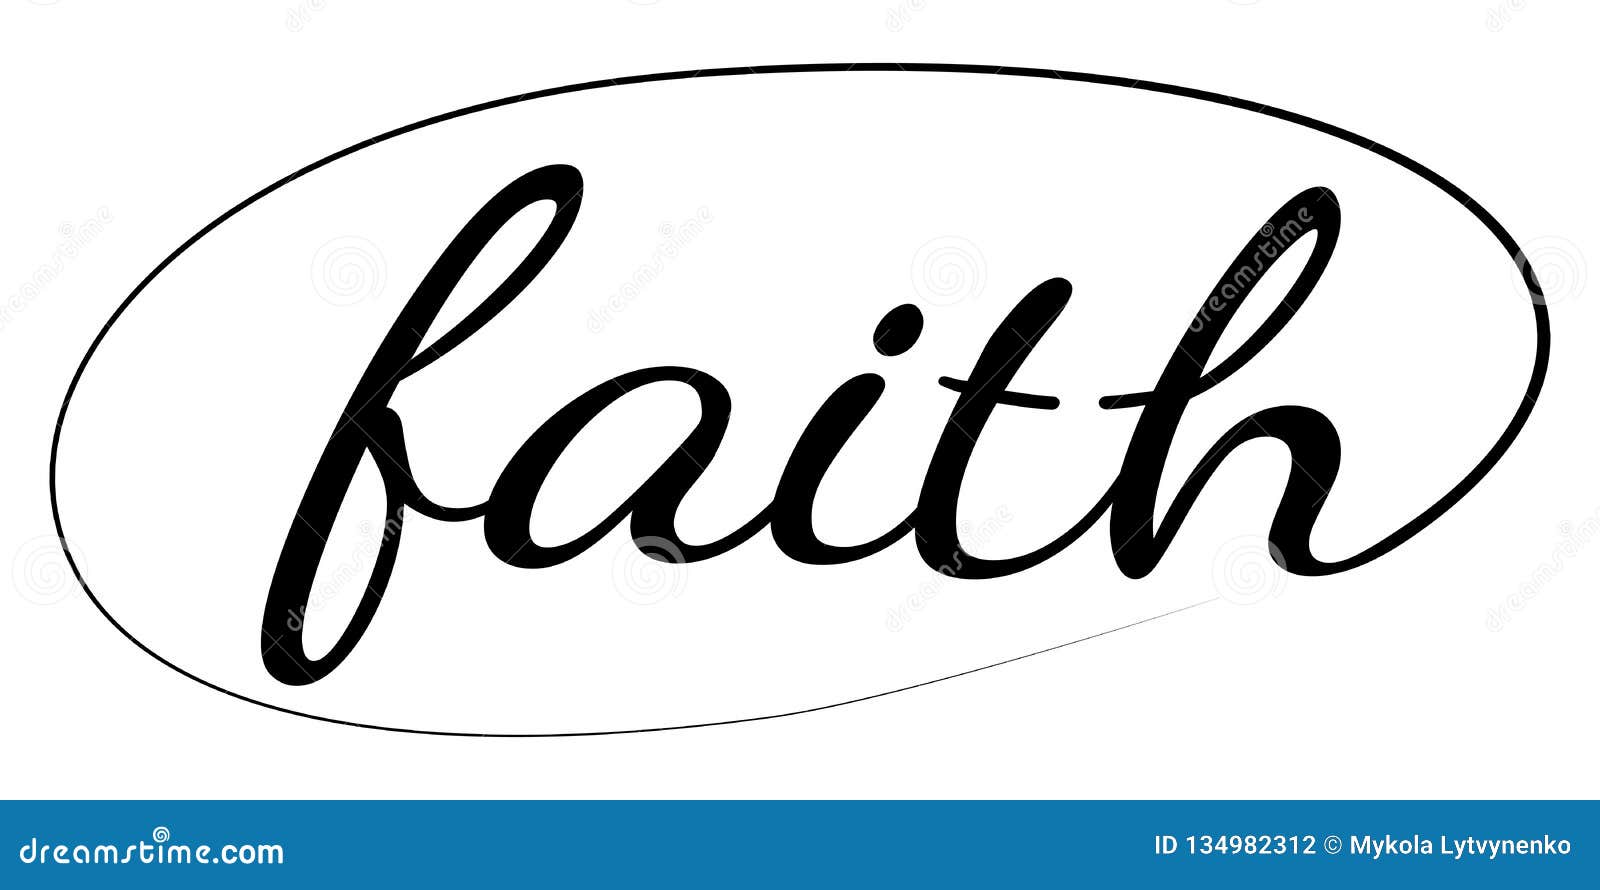 faith cursive tattoo font